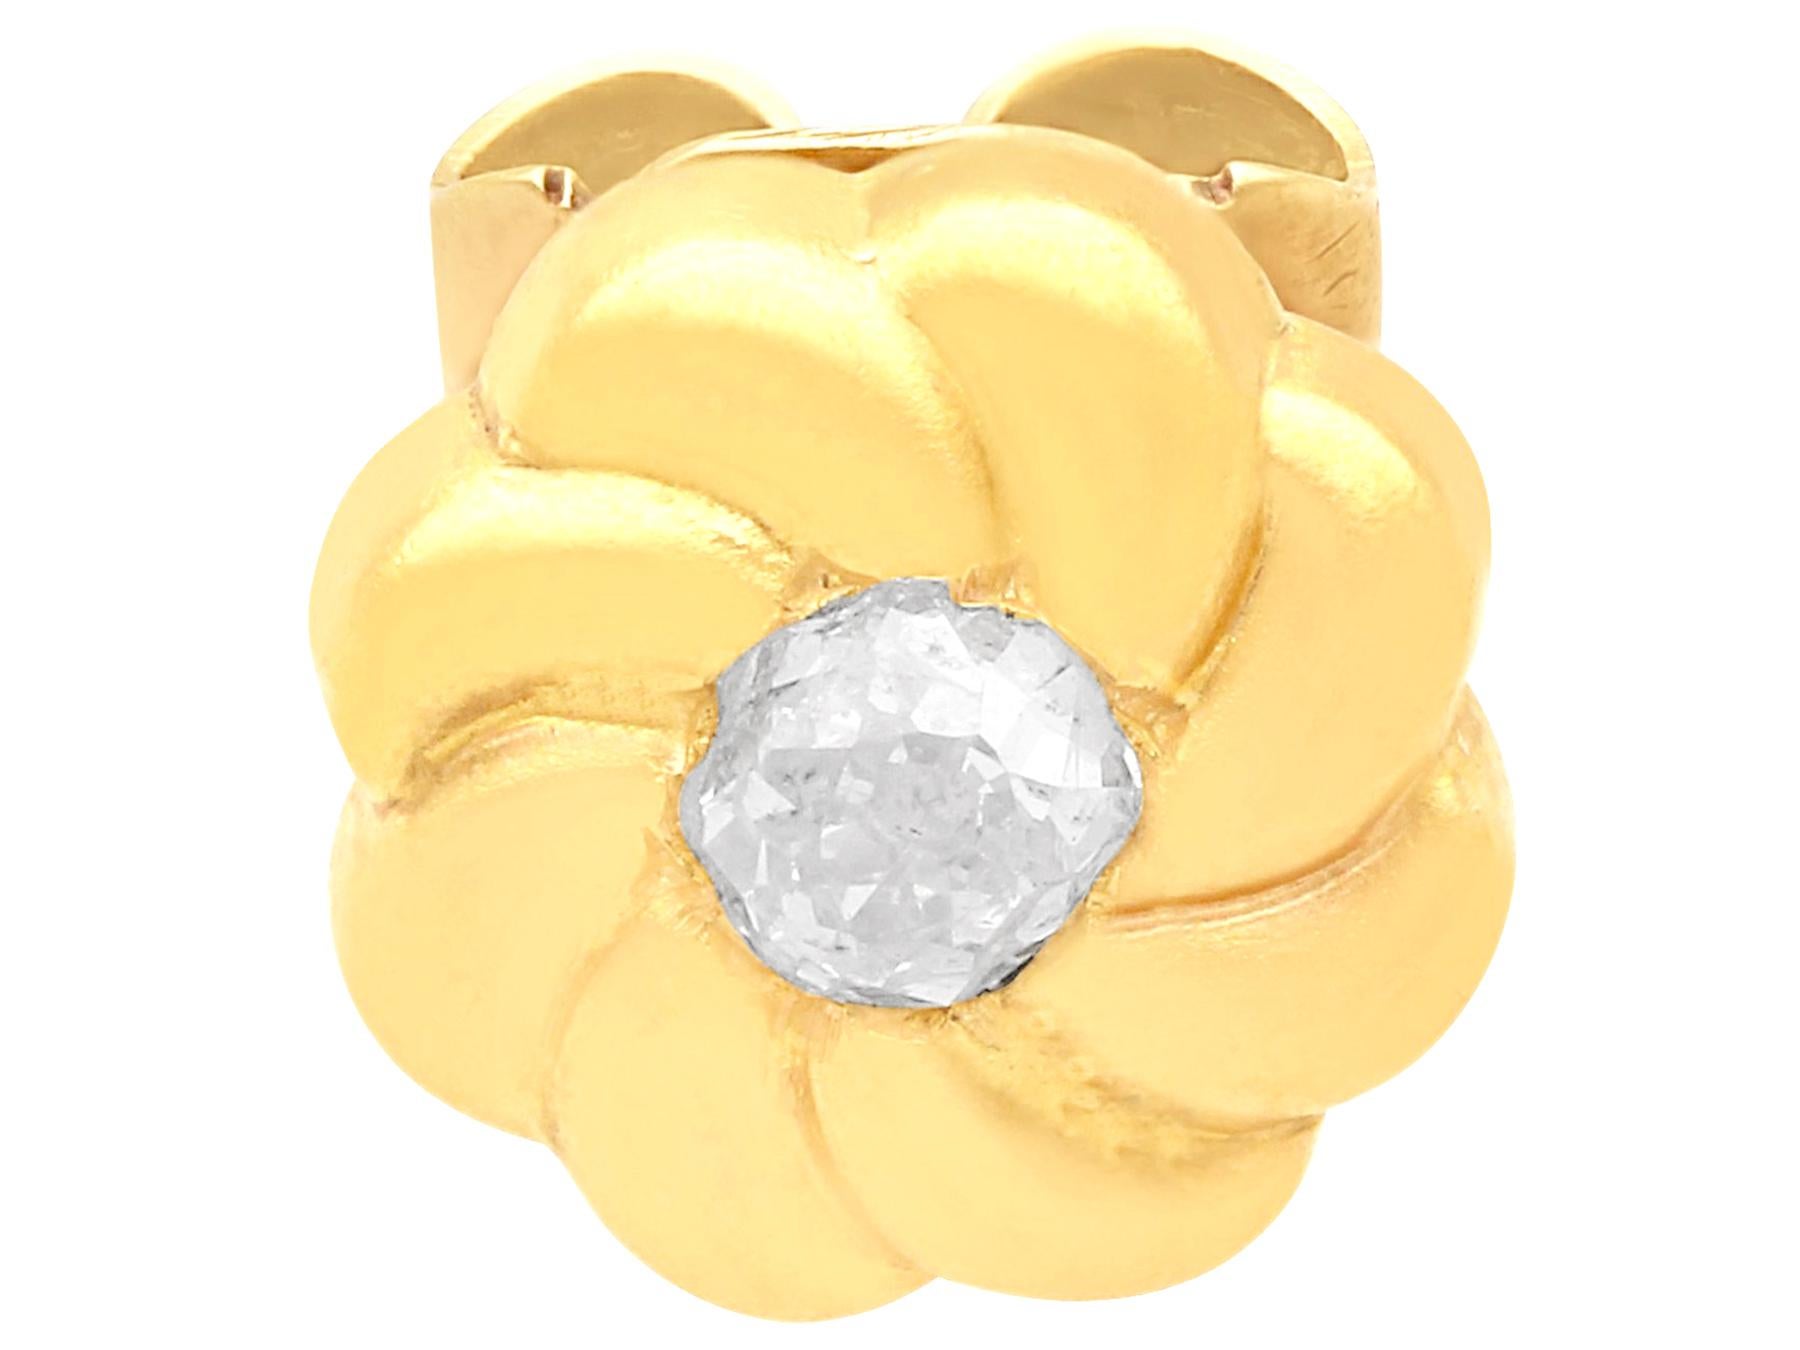 Ein feines und beeindruckendes Paar antiker Ohrstecker aus 0,12 Karat Diamanten und 18 Karat Gelbgold; Teil unserer antiken Schmuck- und Nachlassschmuck-Kollektionen.

Diese feinen antiken Diamant-Ohrringe sind aus 18 Karat Gelbgold